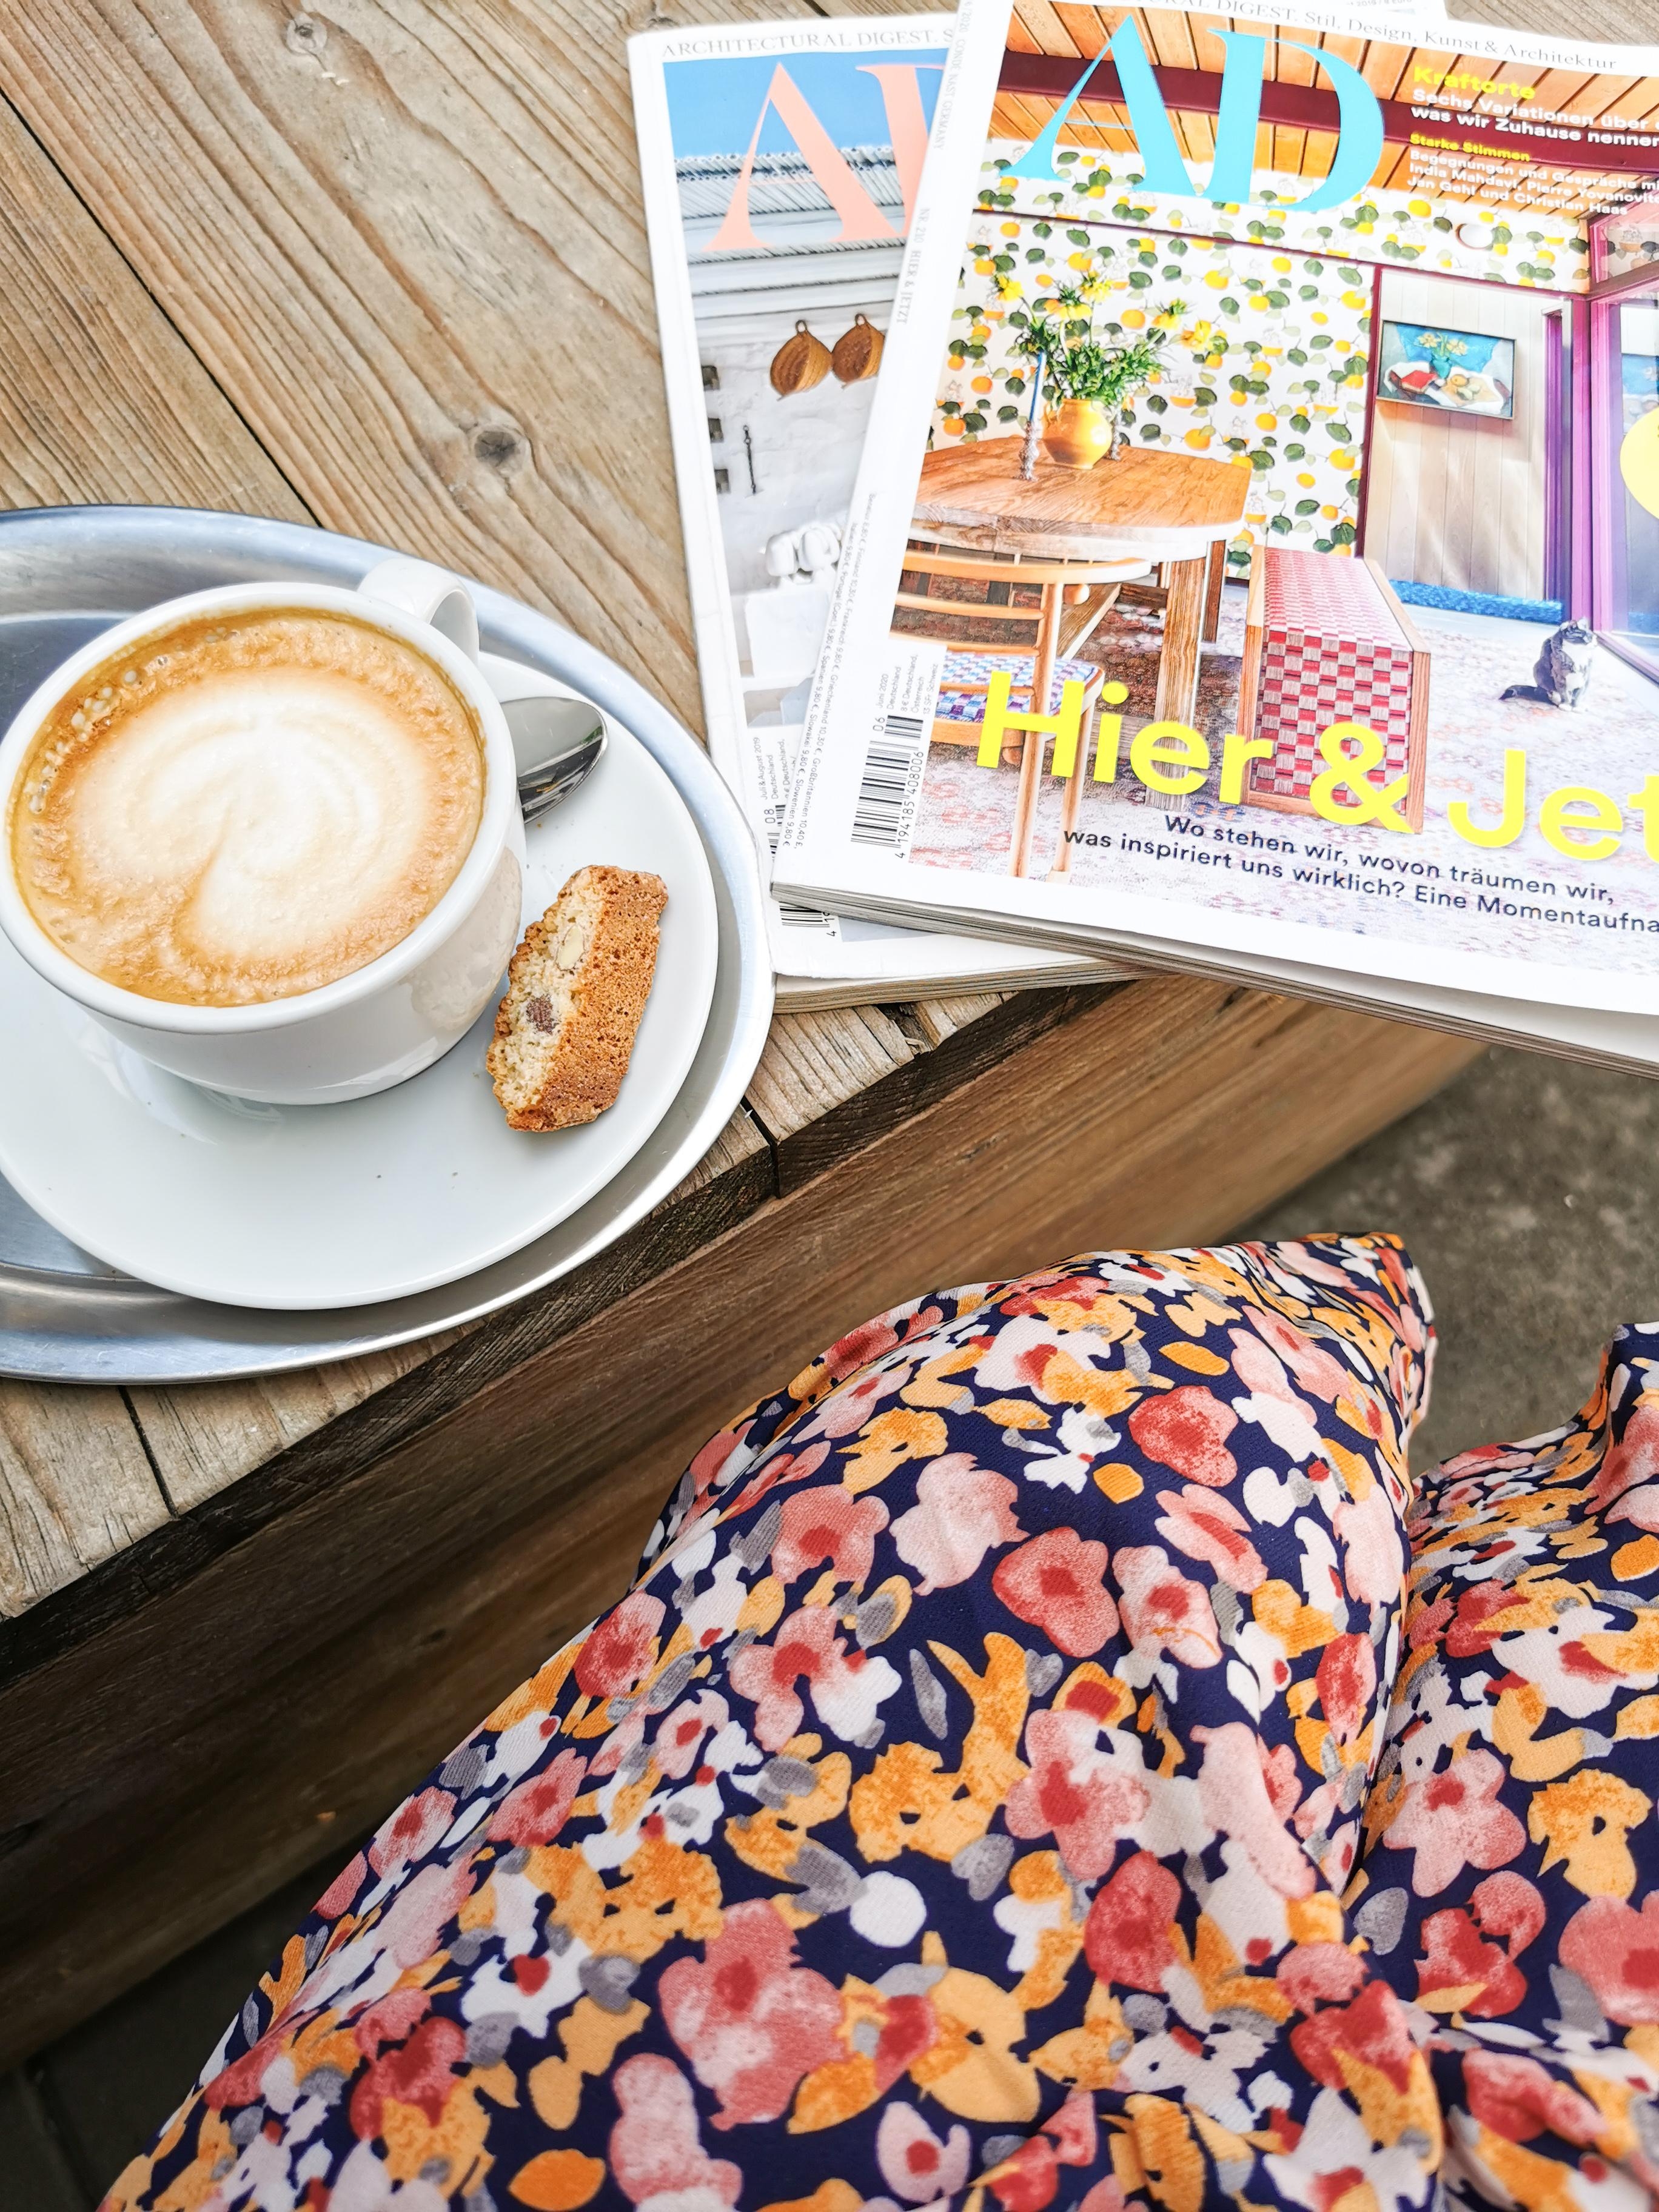 Eine Farbkombi für Sommerlaune 🌞 #detailverliebt #COUCHMagazin #couchliebt #sommer #kaffee #bunt #blumen #farbenfroh